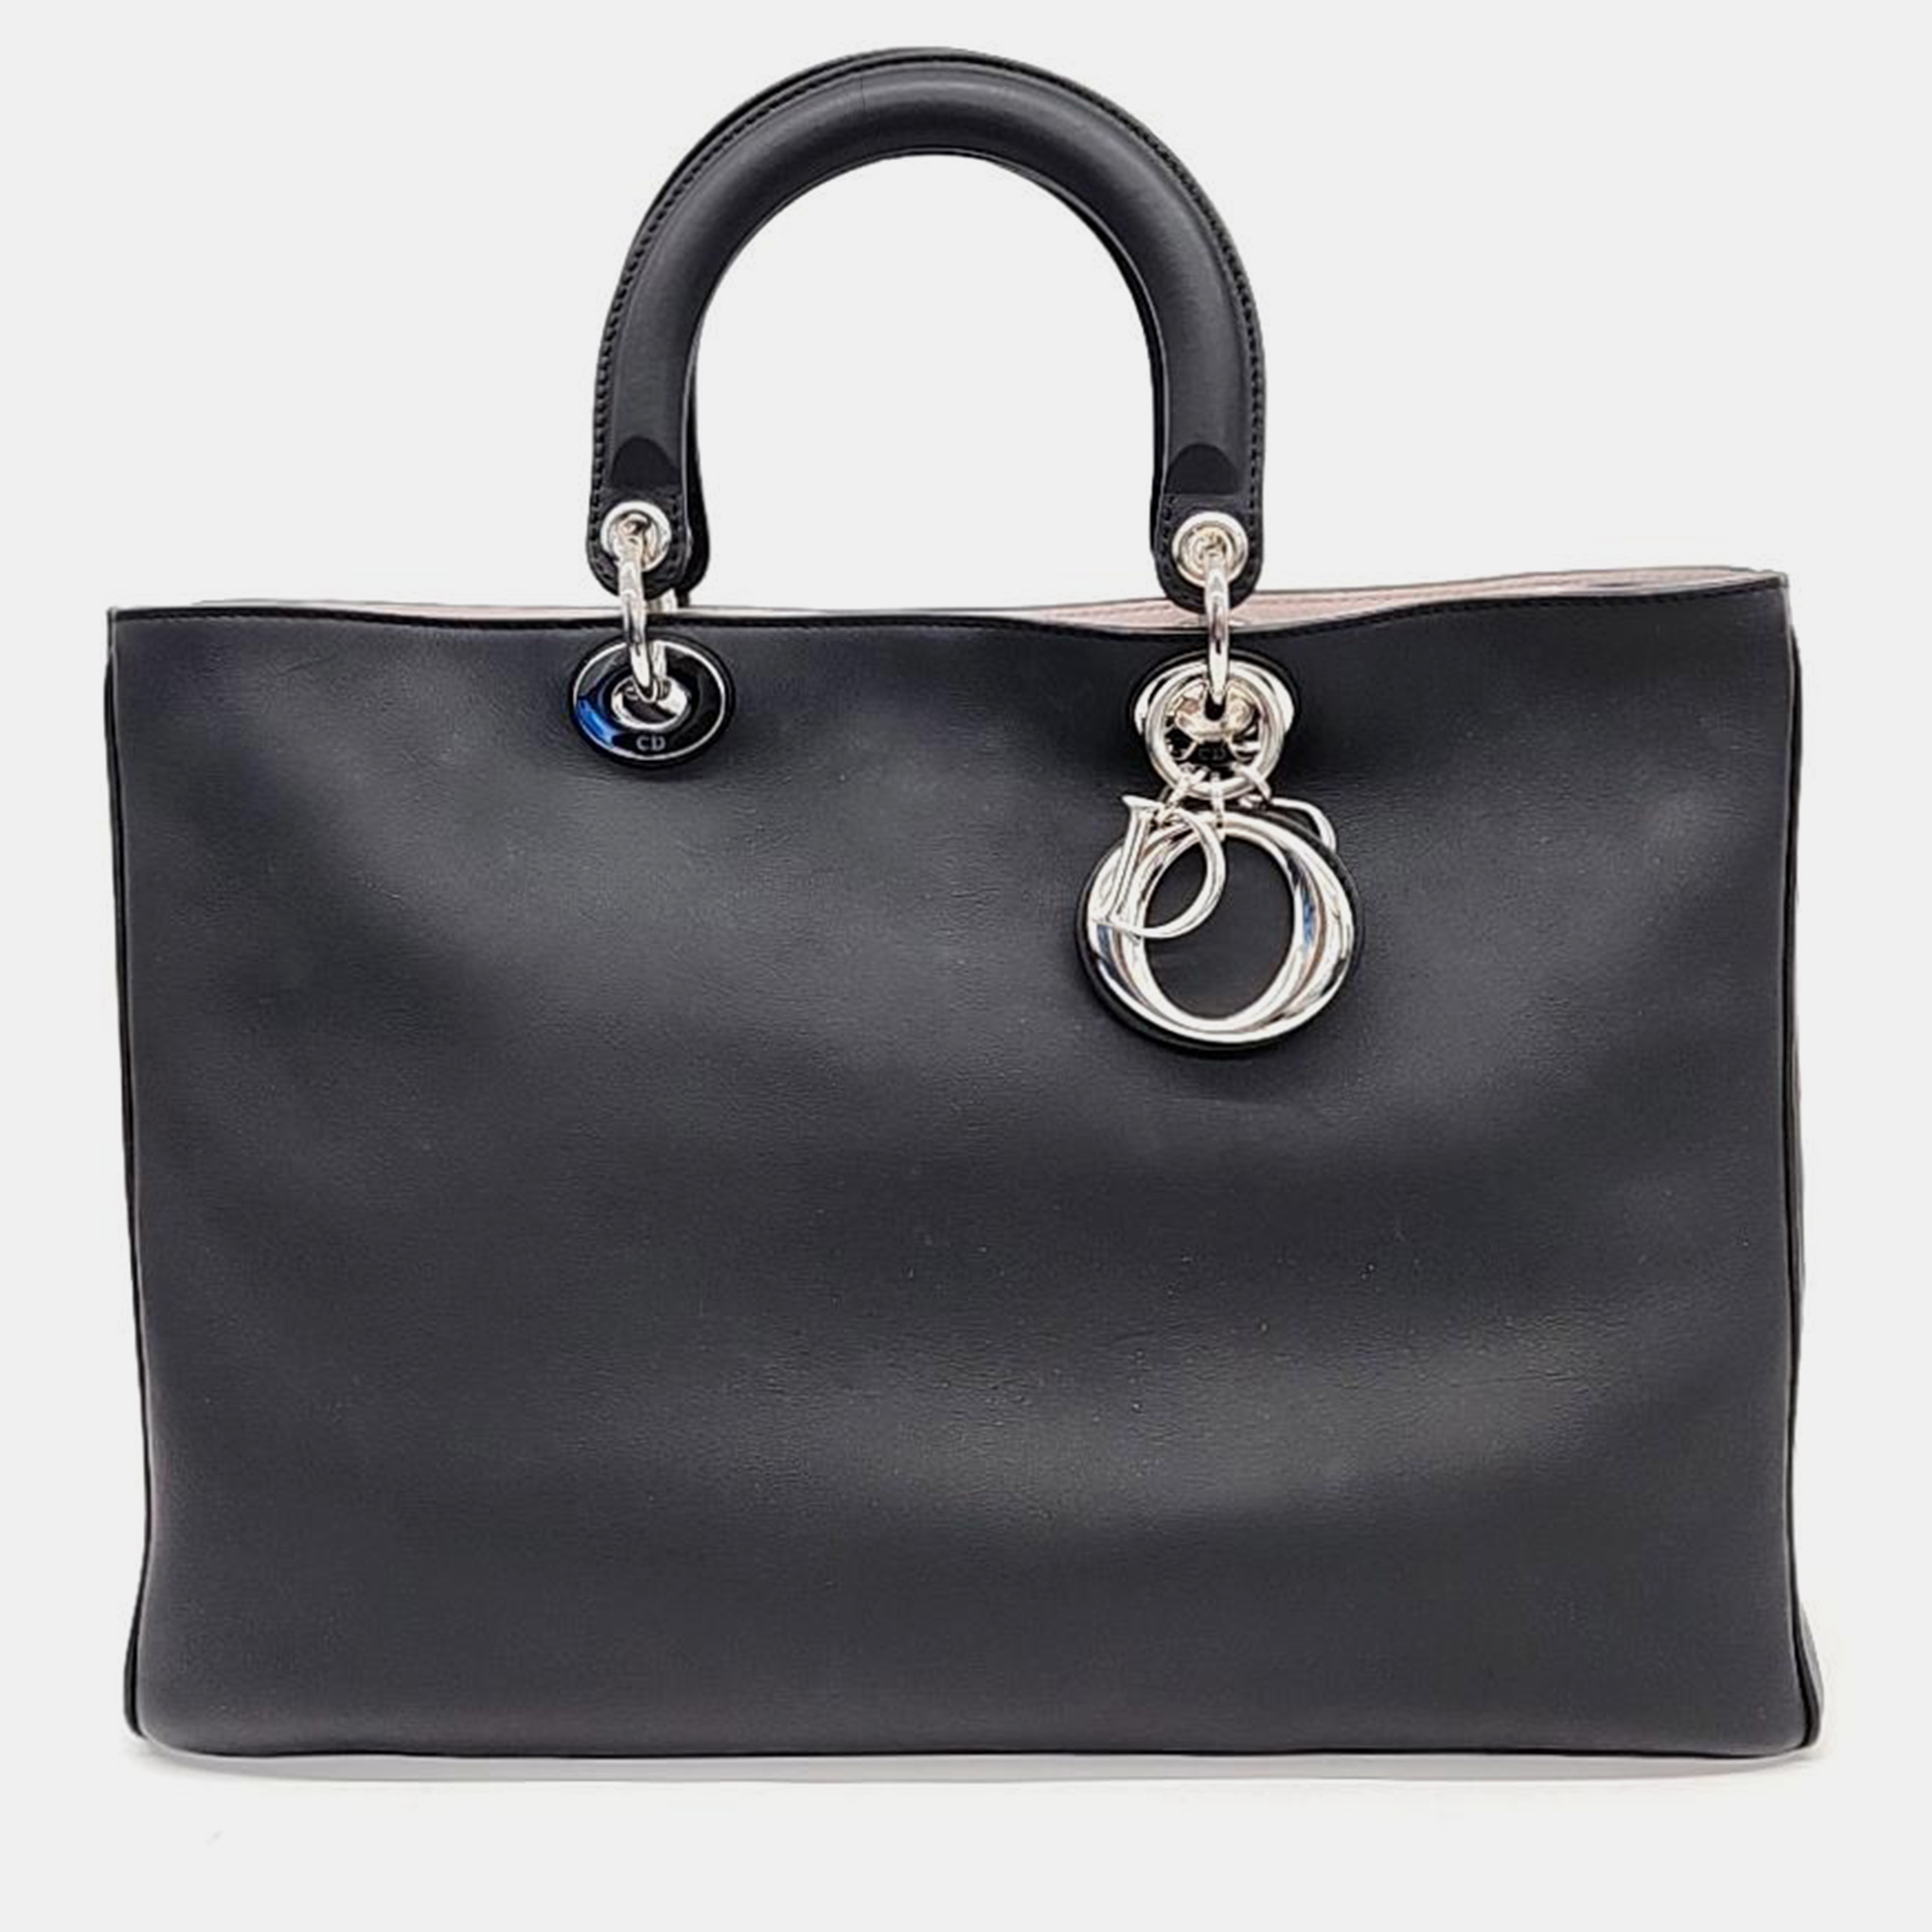 Dior black leather diorissimo tote bag